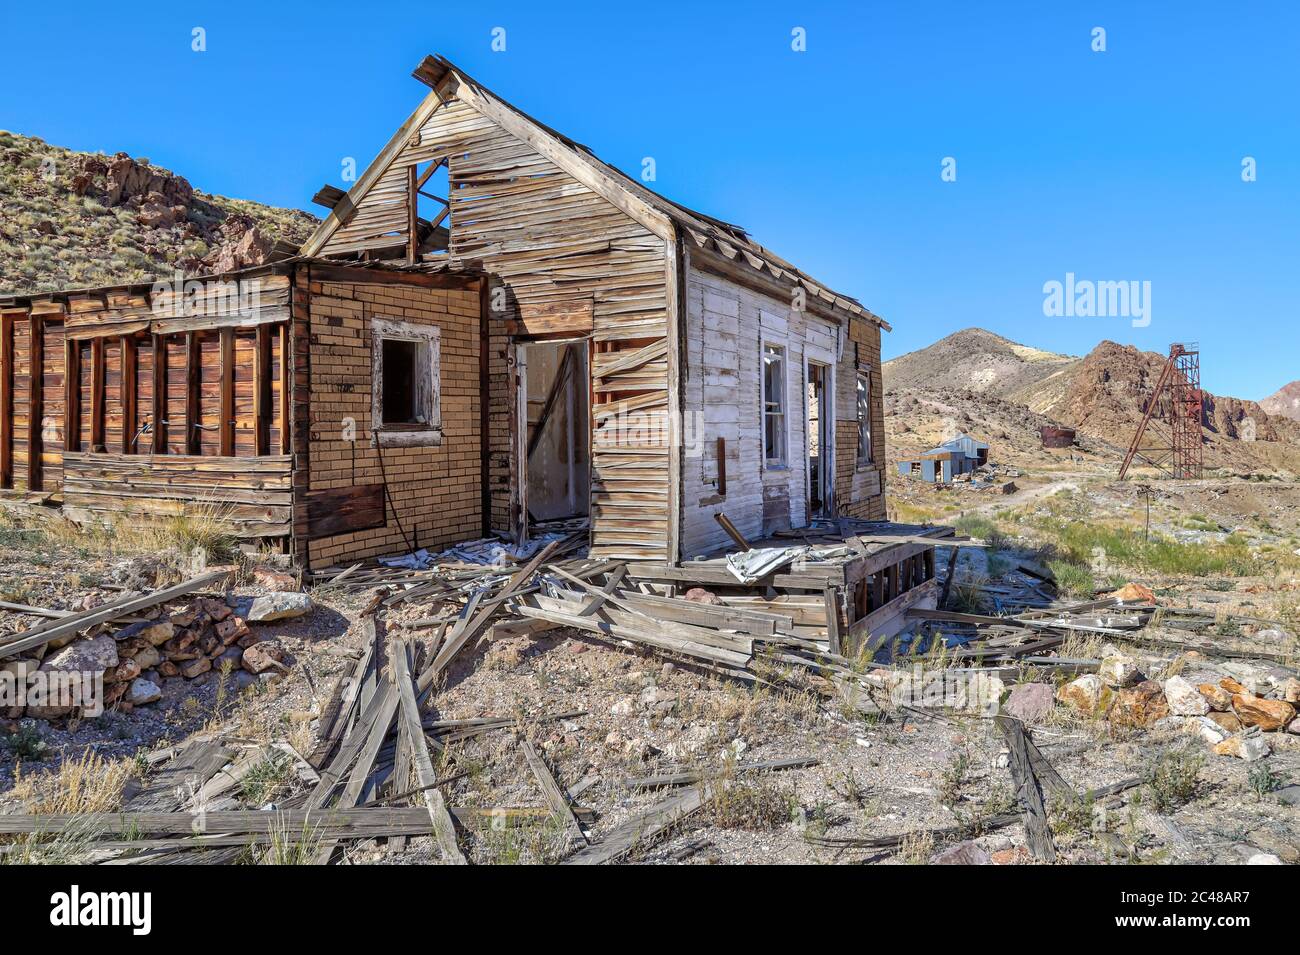 NIVLOC, NEVADA, STATI UNITI - 25 maggio 2020: Un edificio crollato sorge abbandonato nel sito della città fantasma mineraria dell'oro di Nivloc, nell'Esmeralda Foto Stock